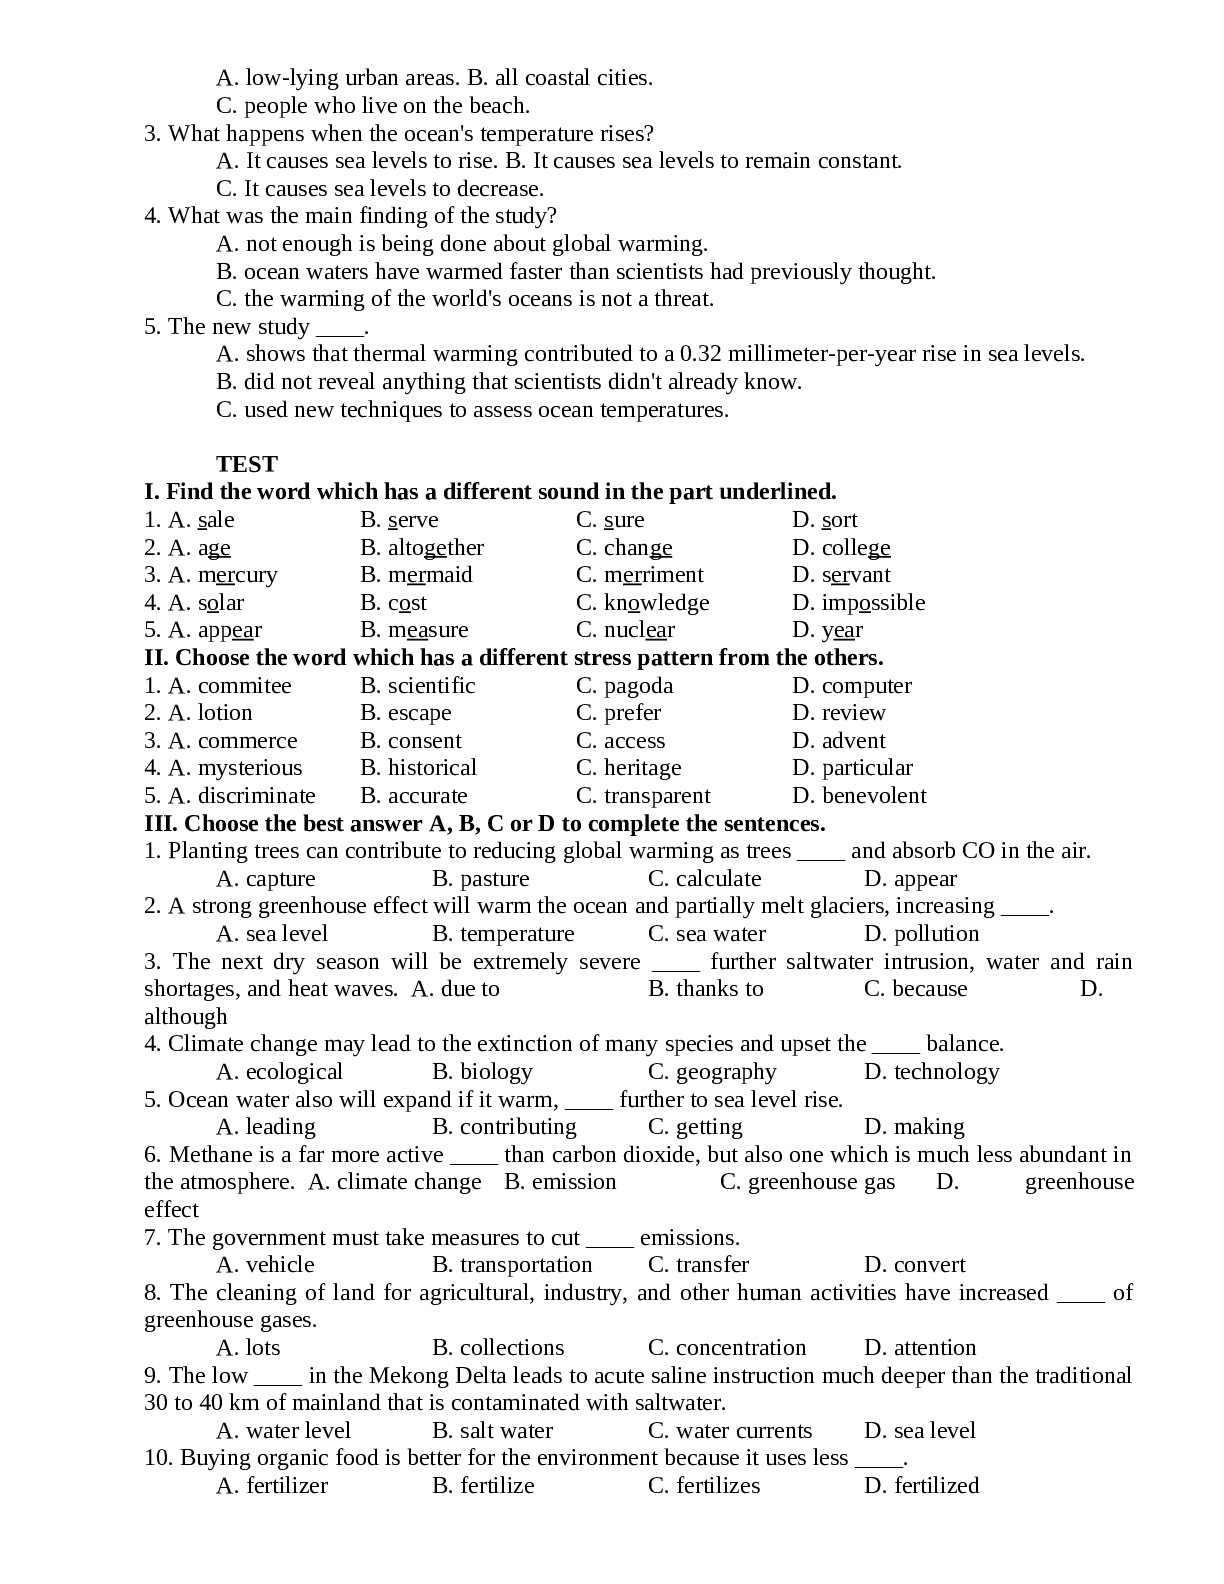 Đề cương ôn tập Tiếng Anh giữa học kì 2 đầy đủ (trang 9)